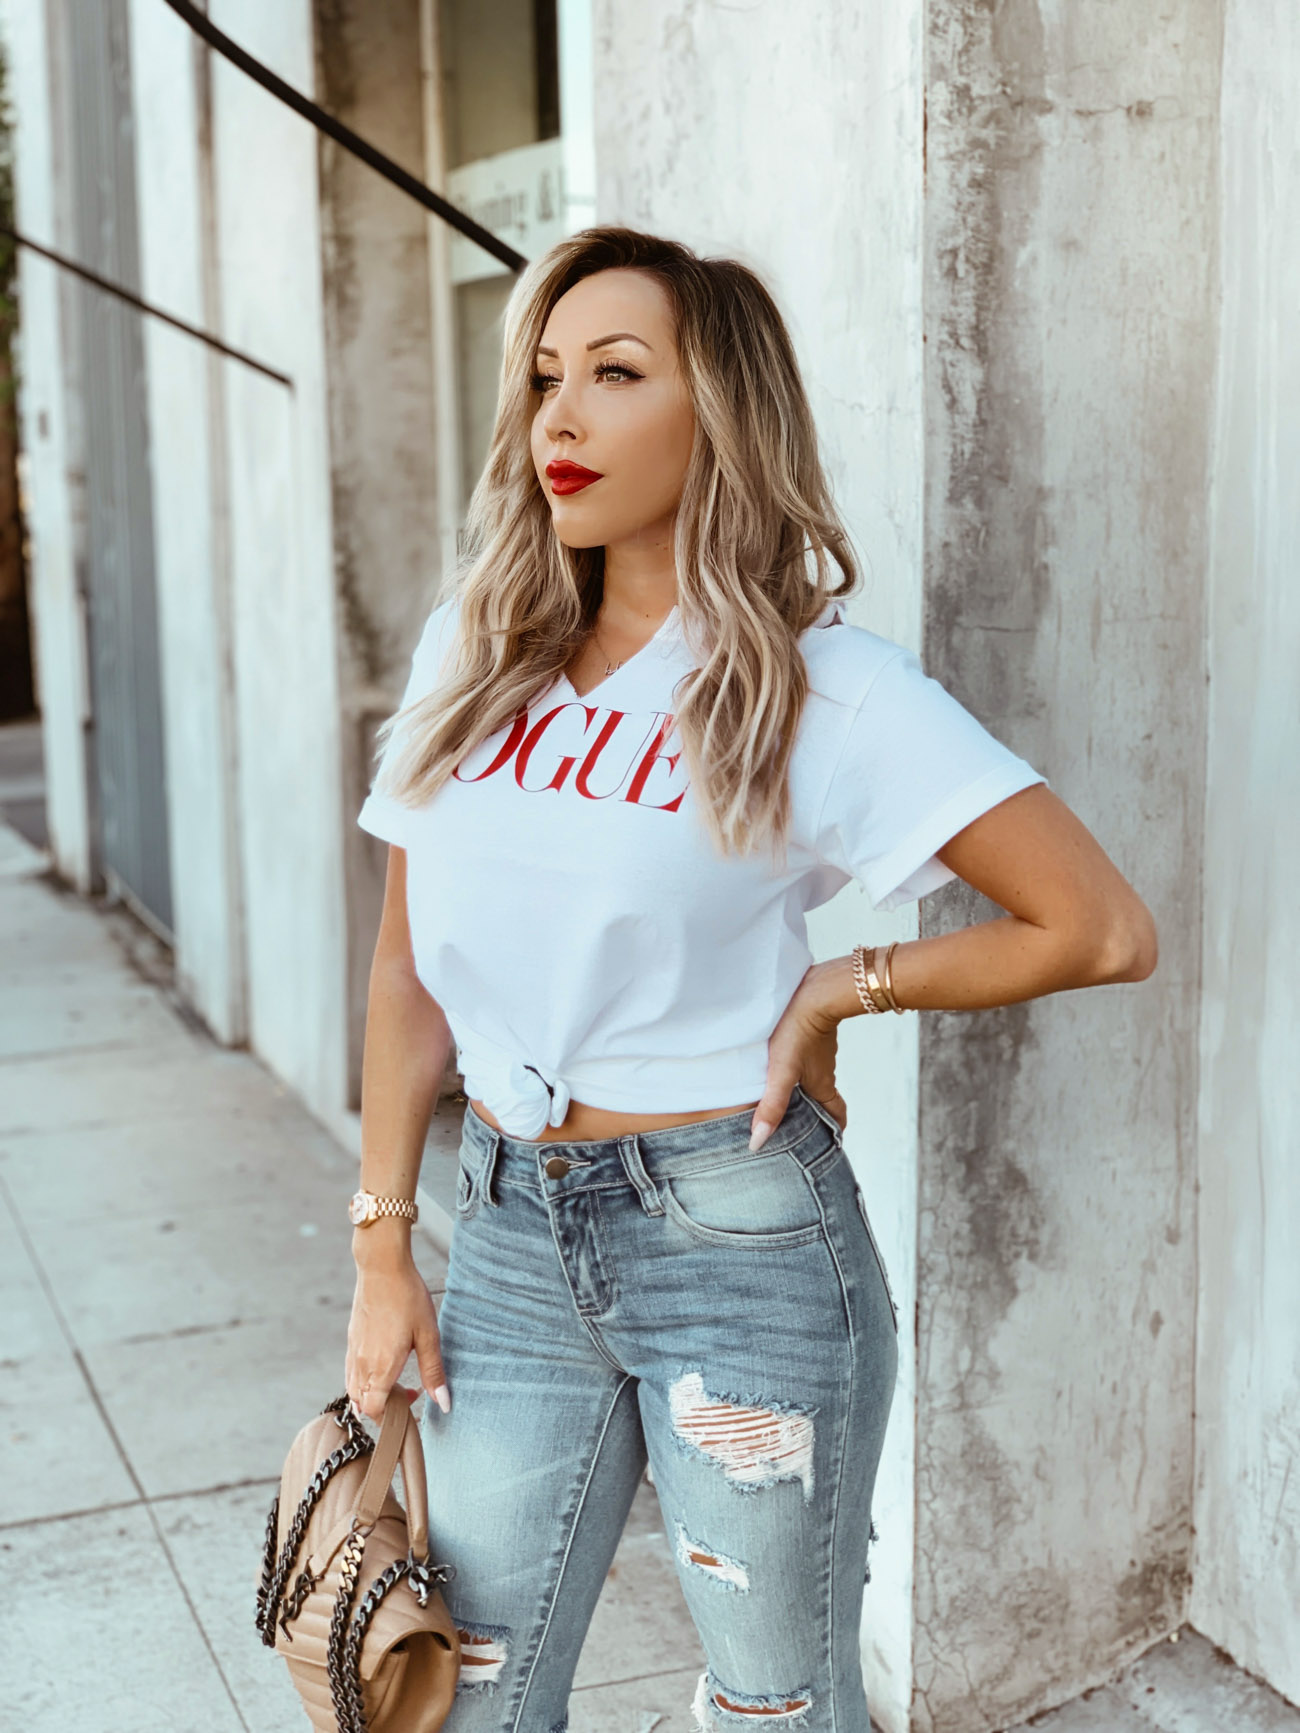 Vogue Tee | Ripped Denim | Red Heels | Street Style in LA | Blondie in the City by Hayley Larue